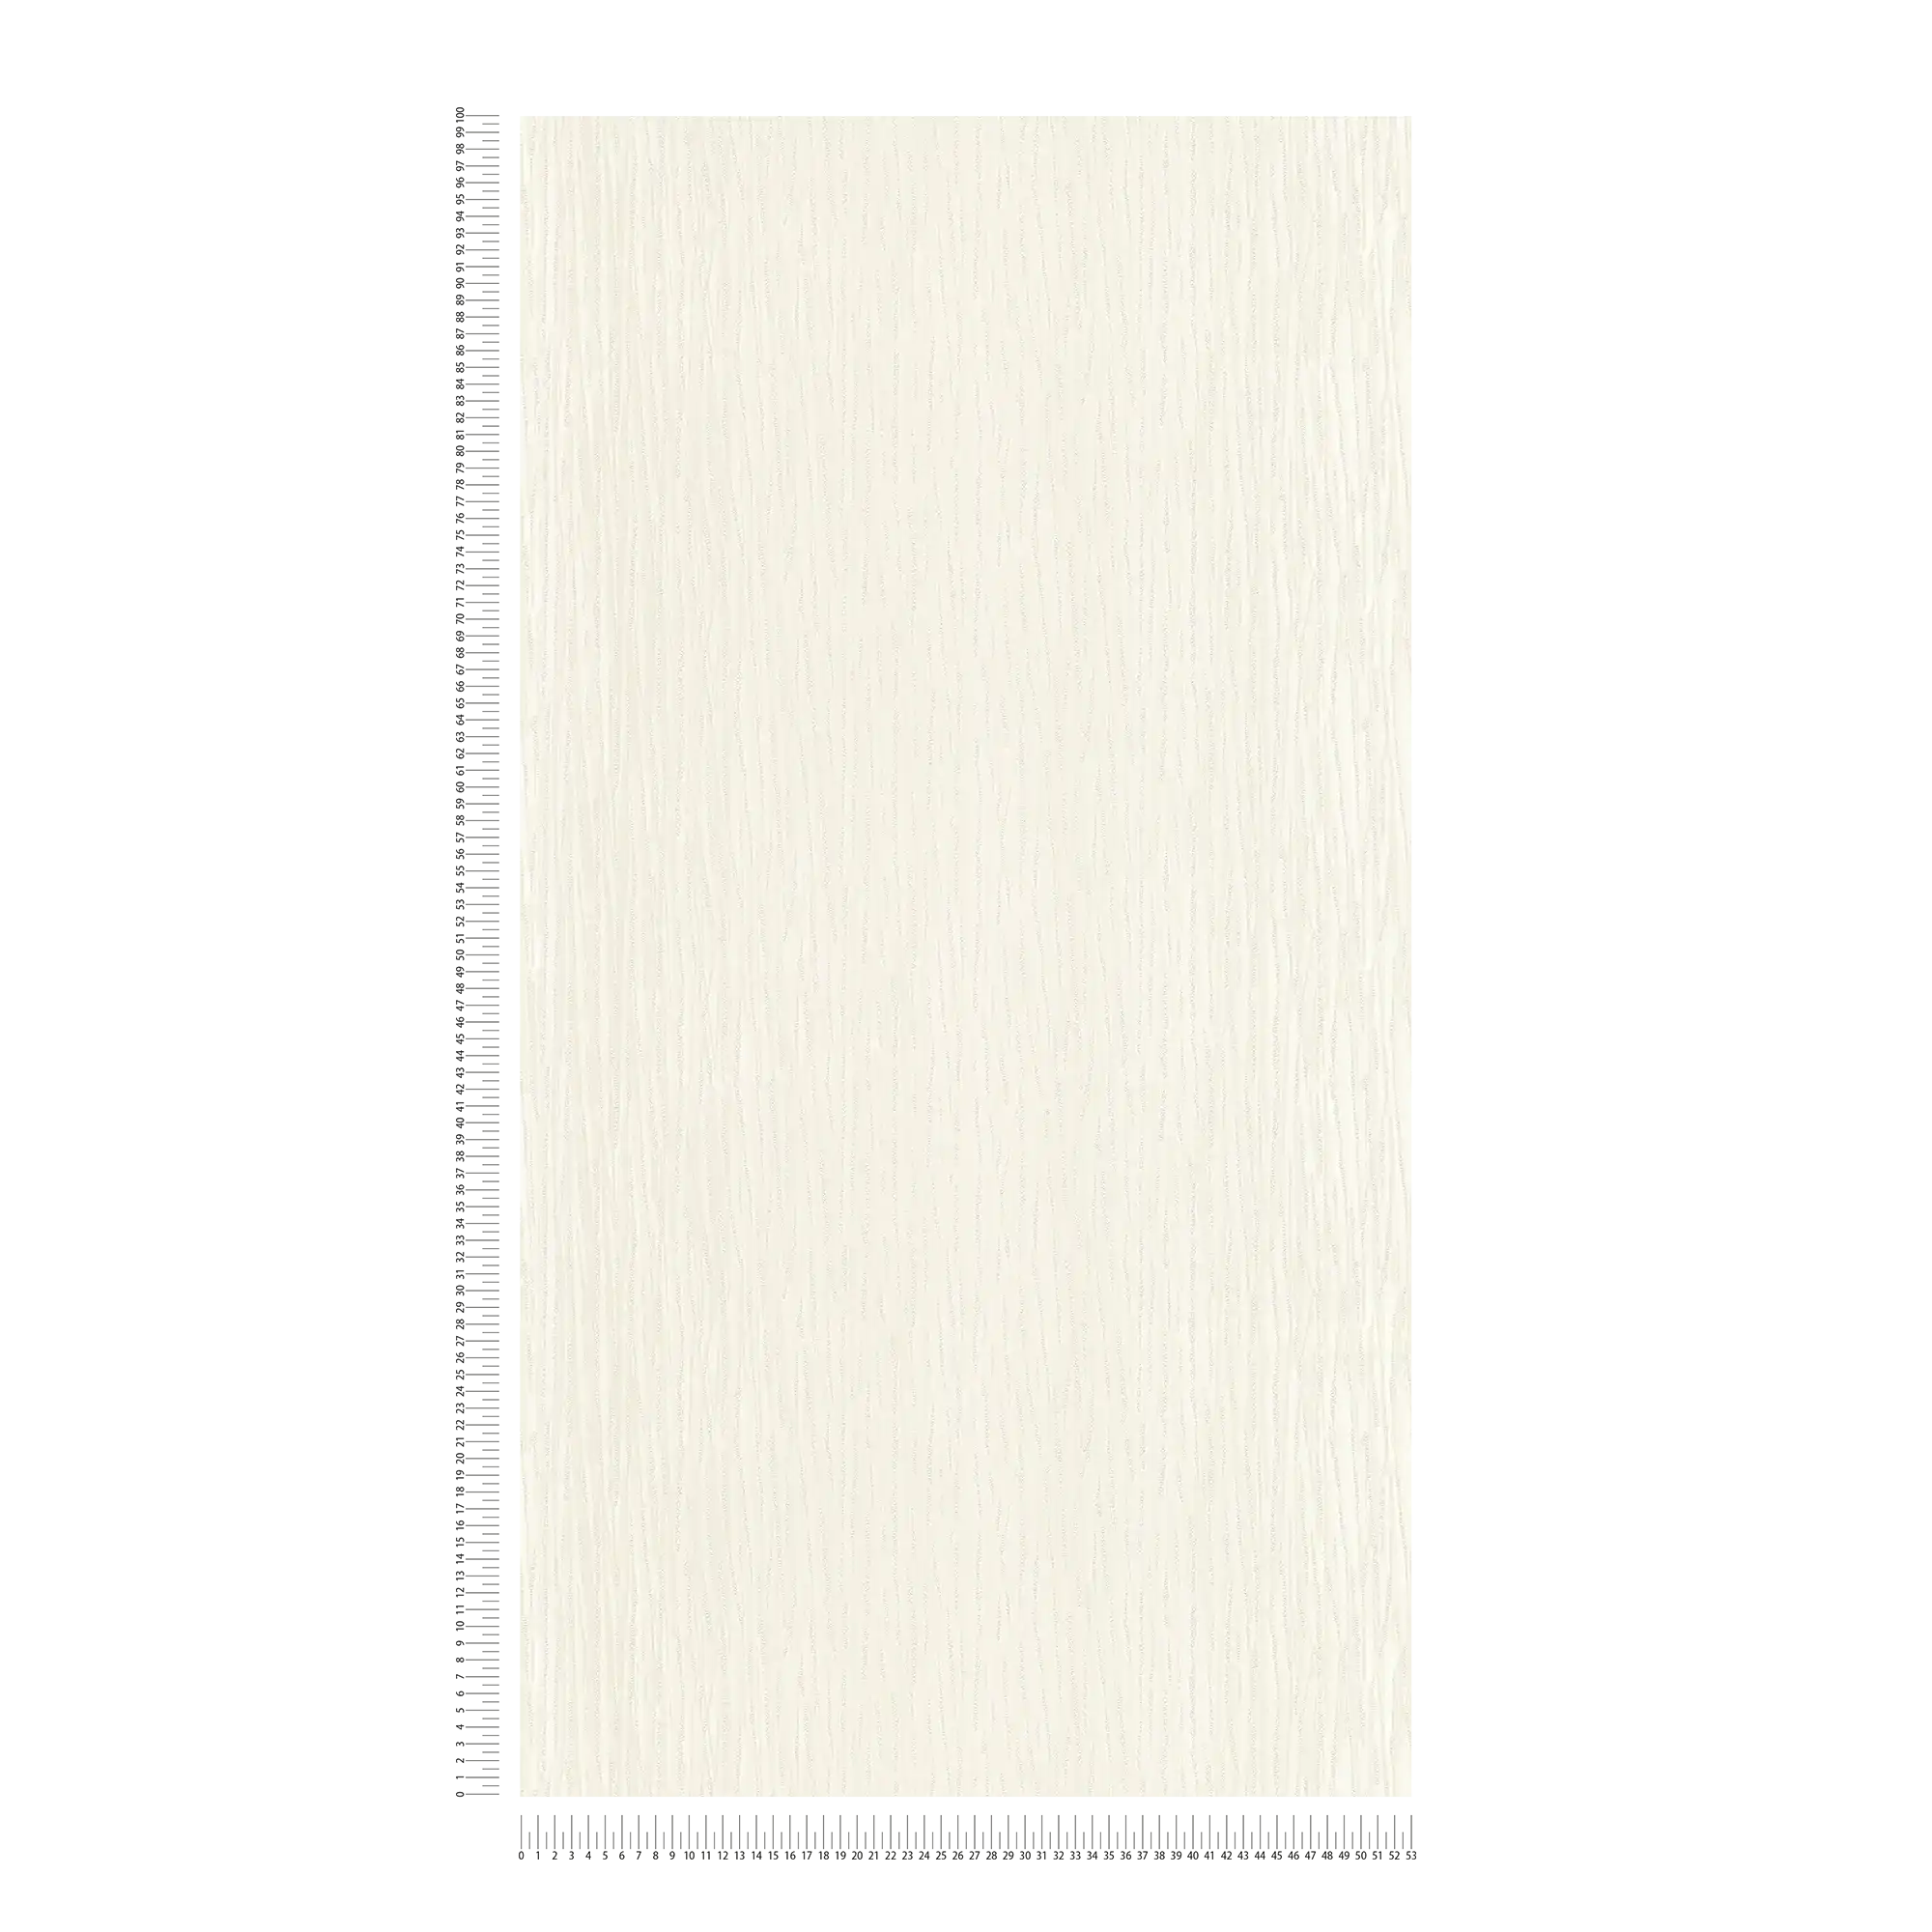             Carta da parati a tinta unita color crema con lucentezza metallica e disegno a tratteggio
        